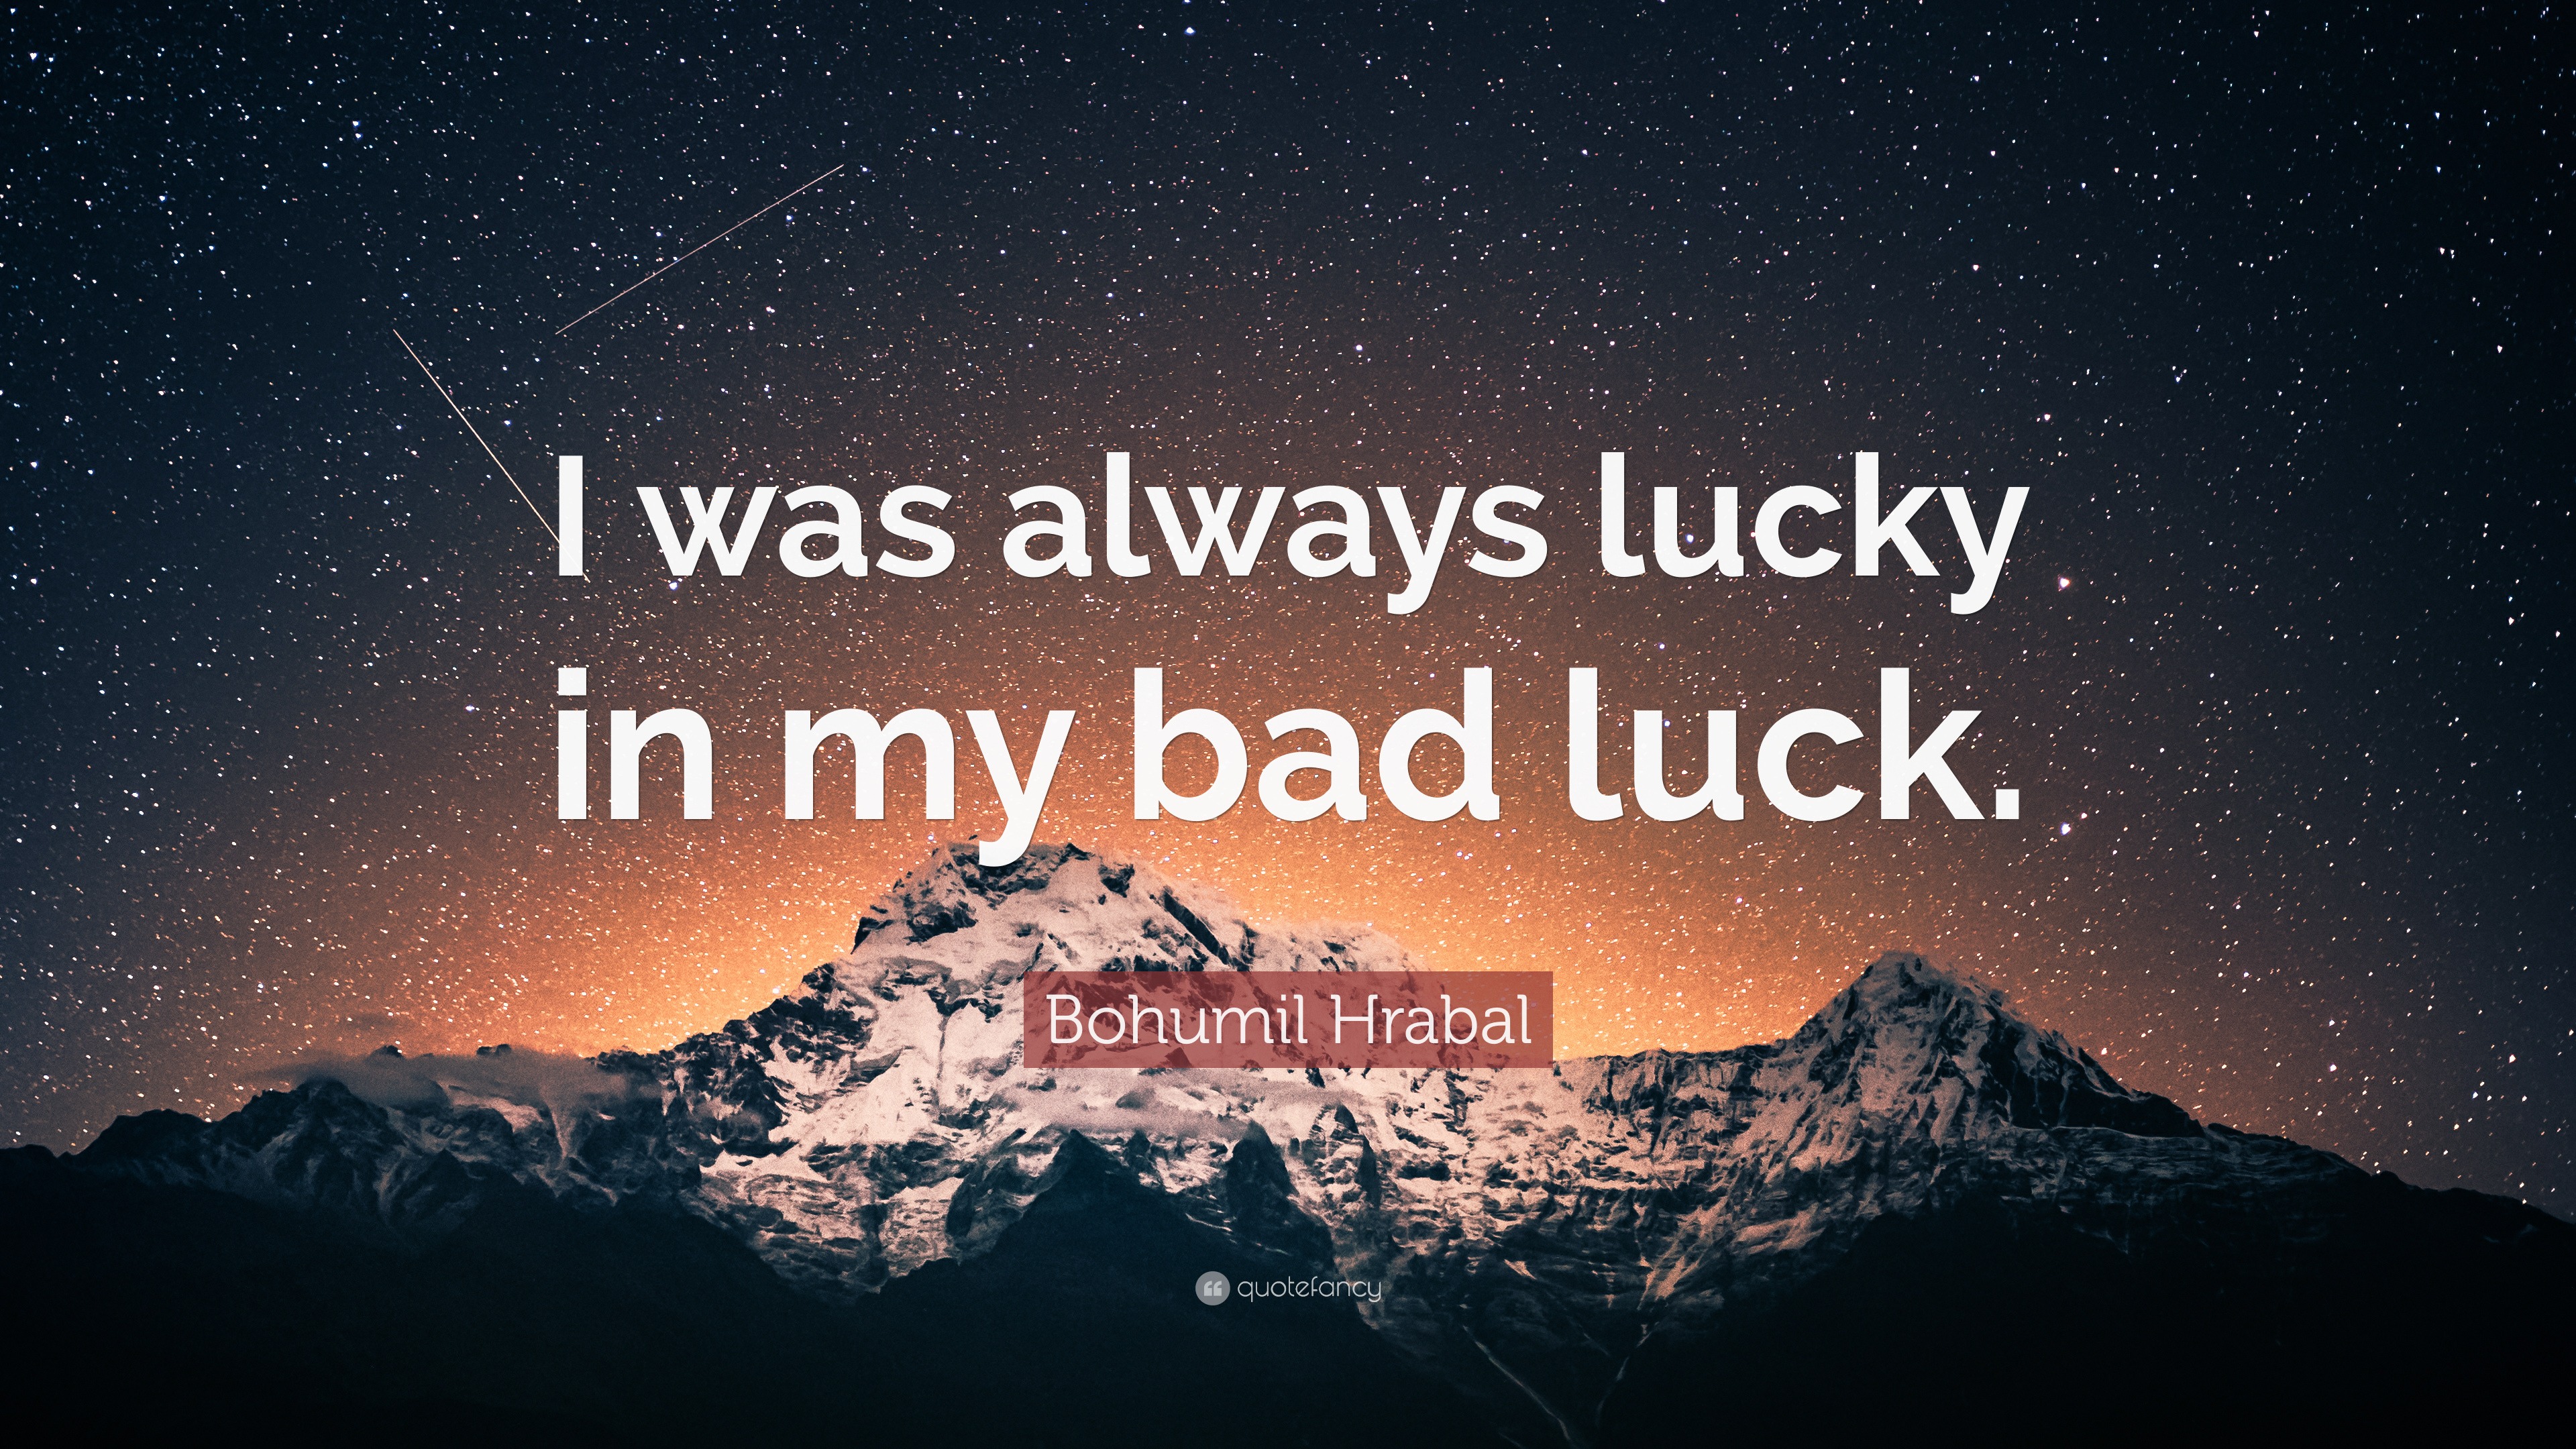 Always luck